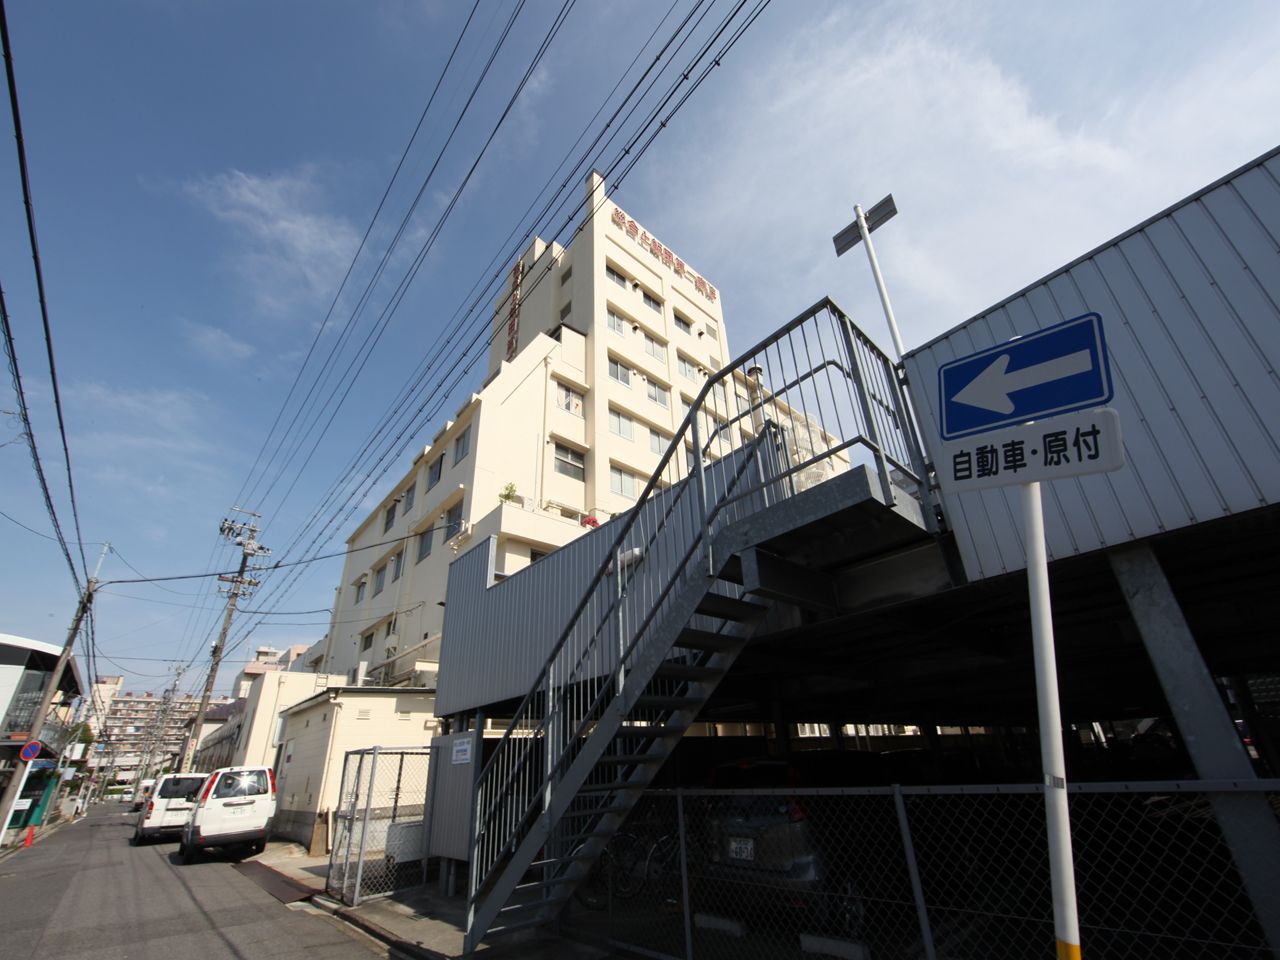 Hospital. 1600m, up to a total Kamiida first hospital (hospital)